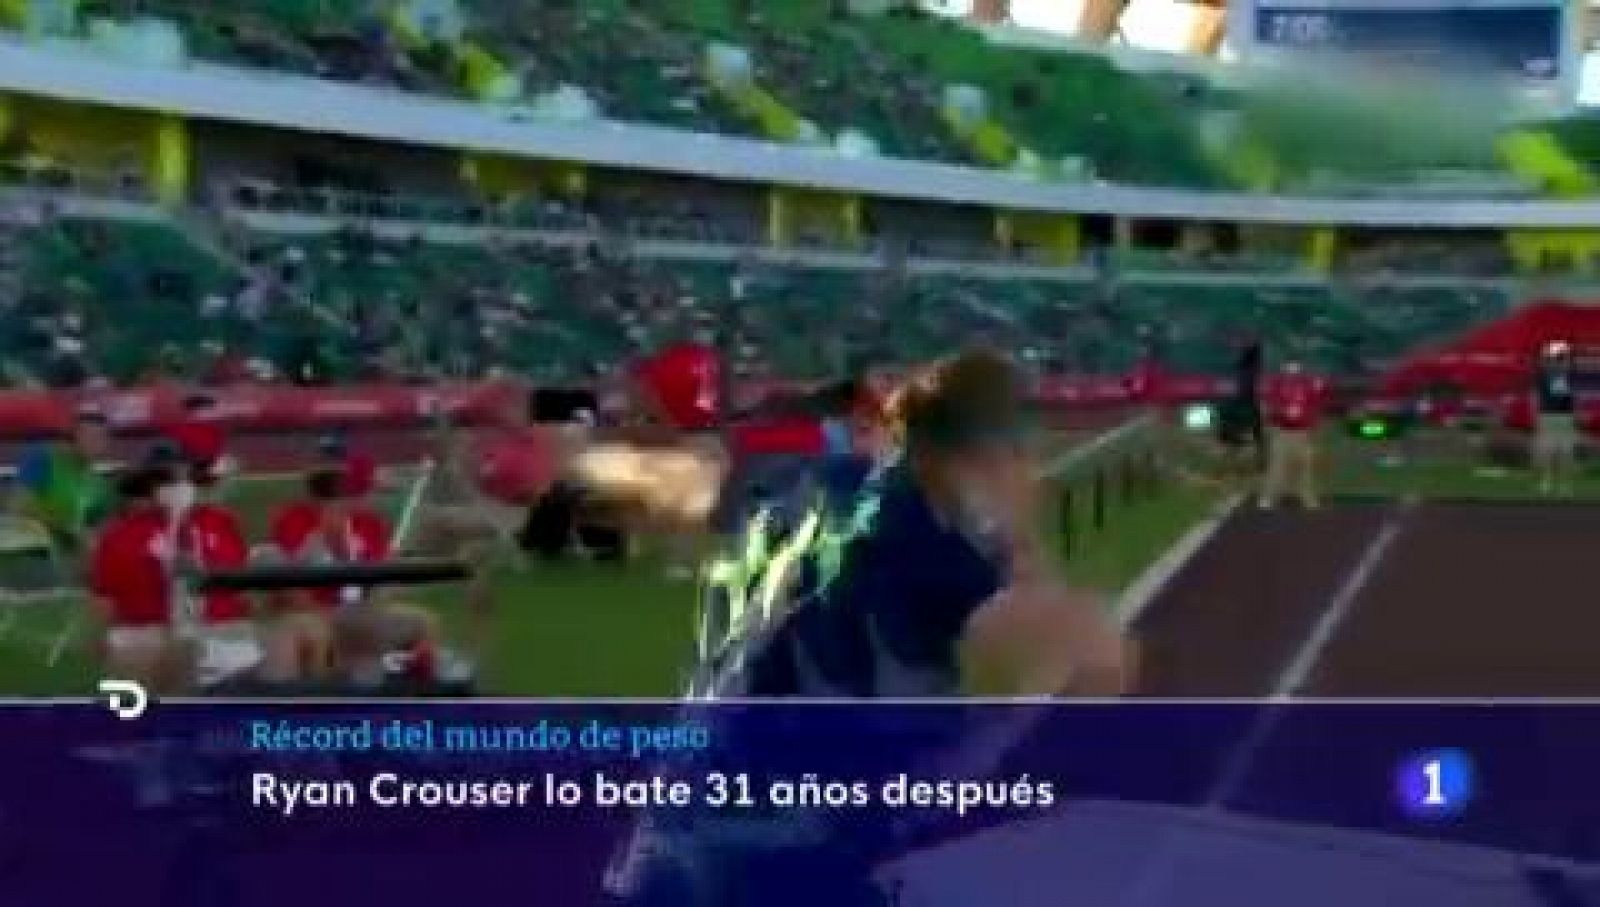 Crouser bate el récord mundial de lanzamiento de hace 31 años